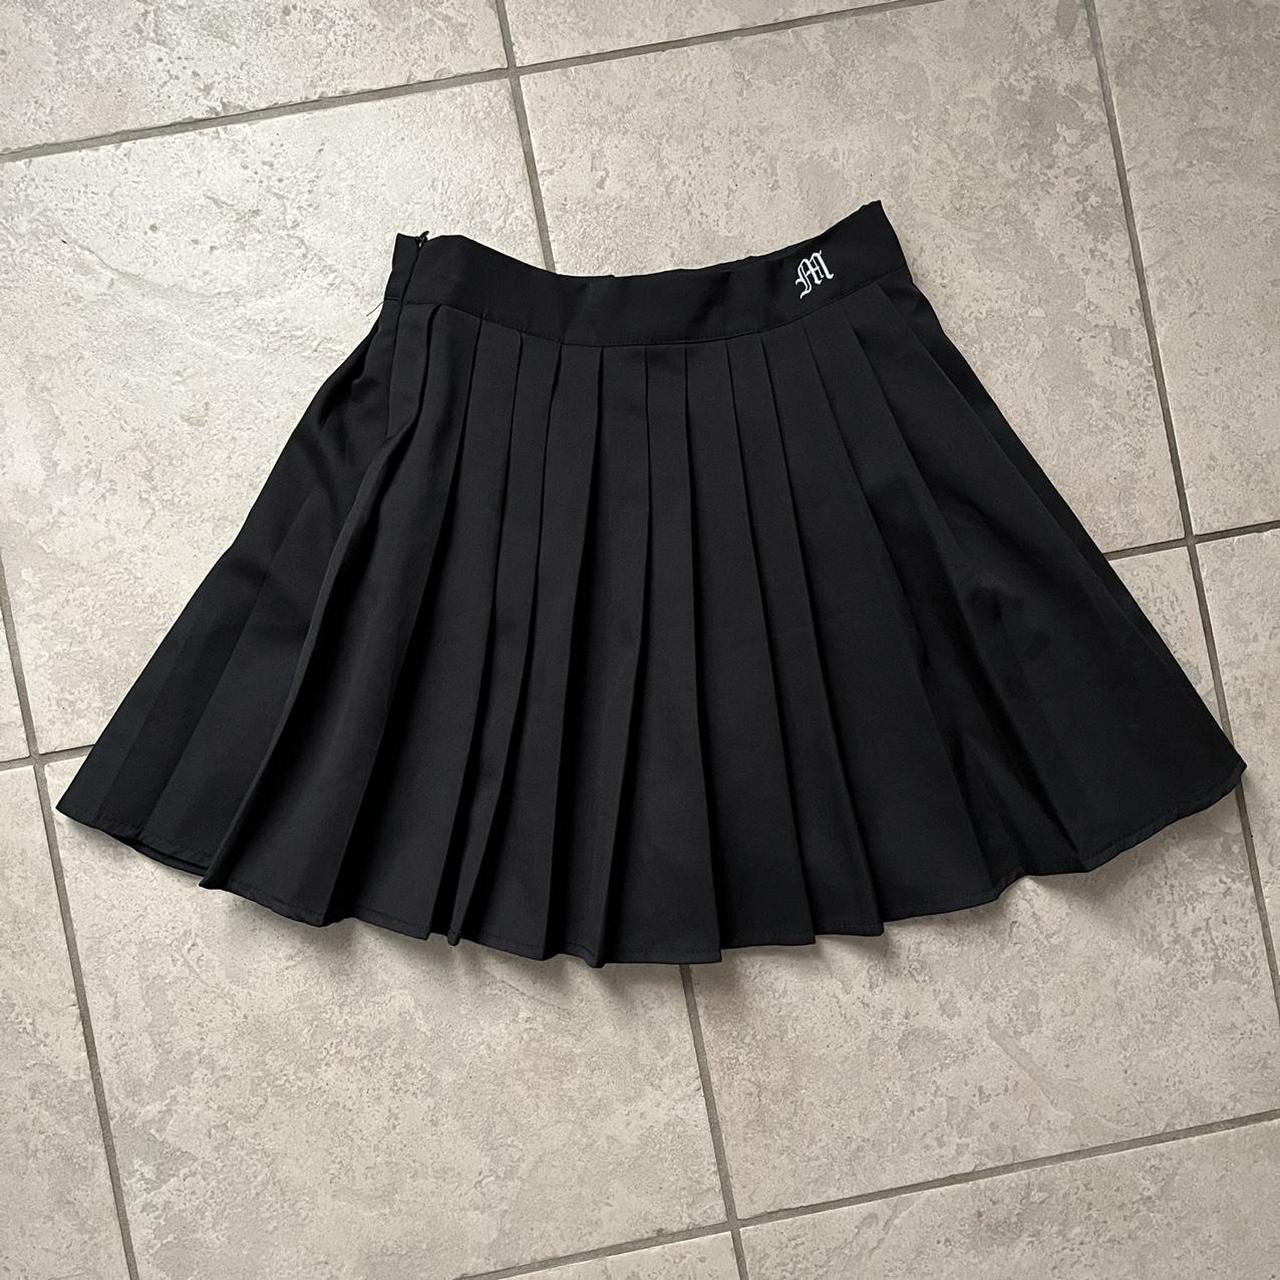 Women's Black and White Skirt